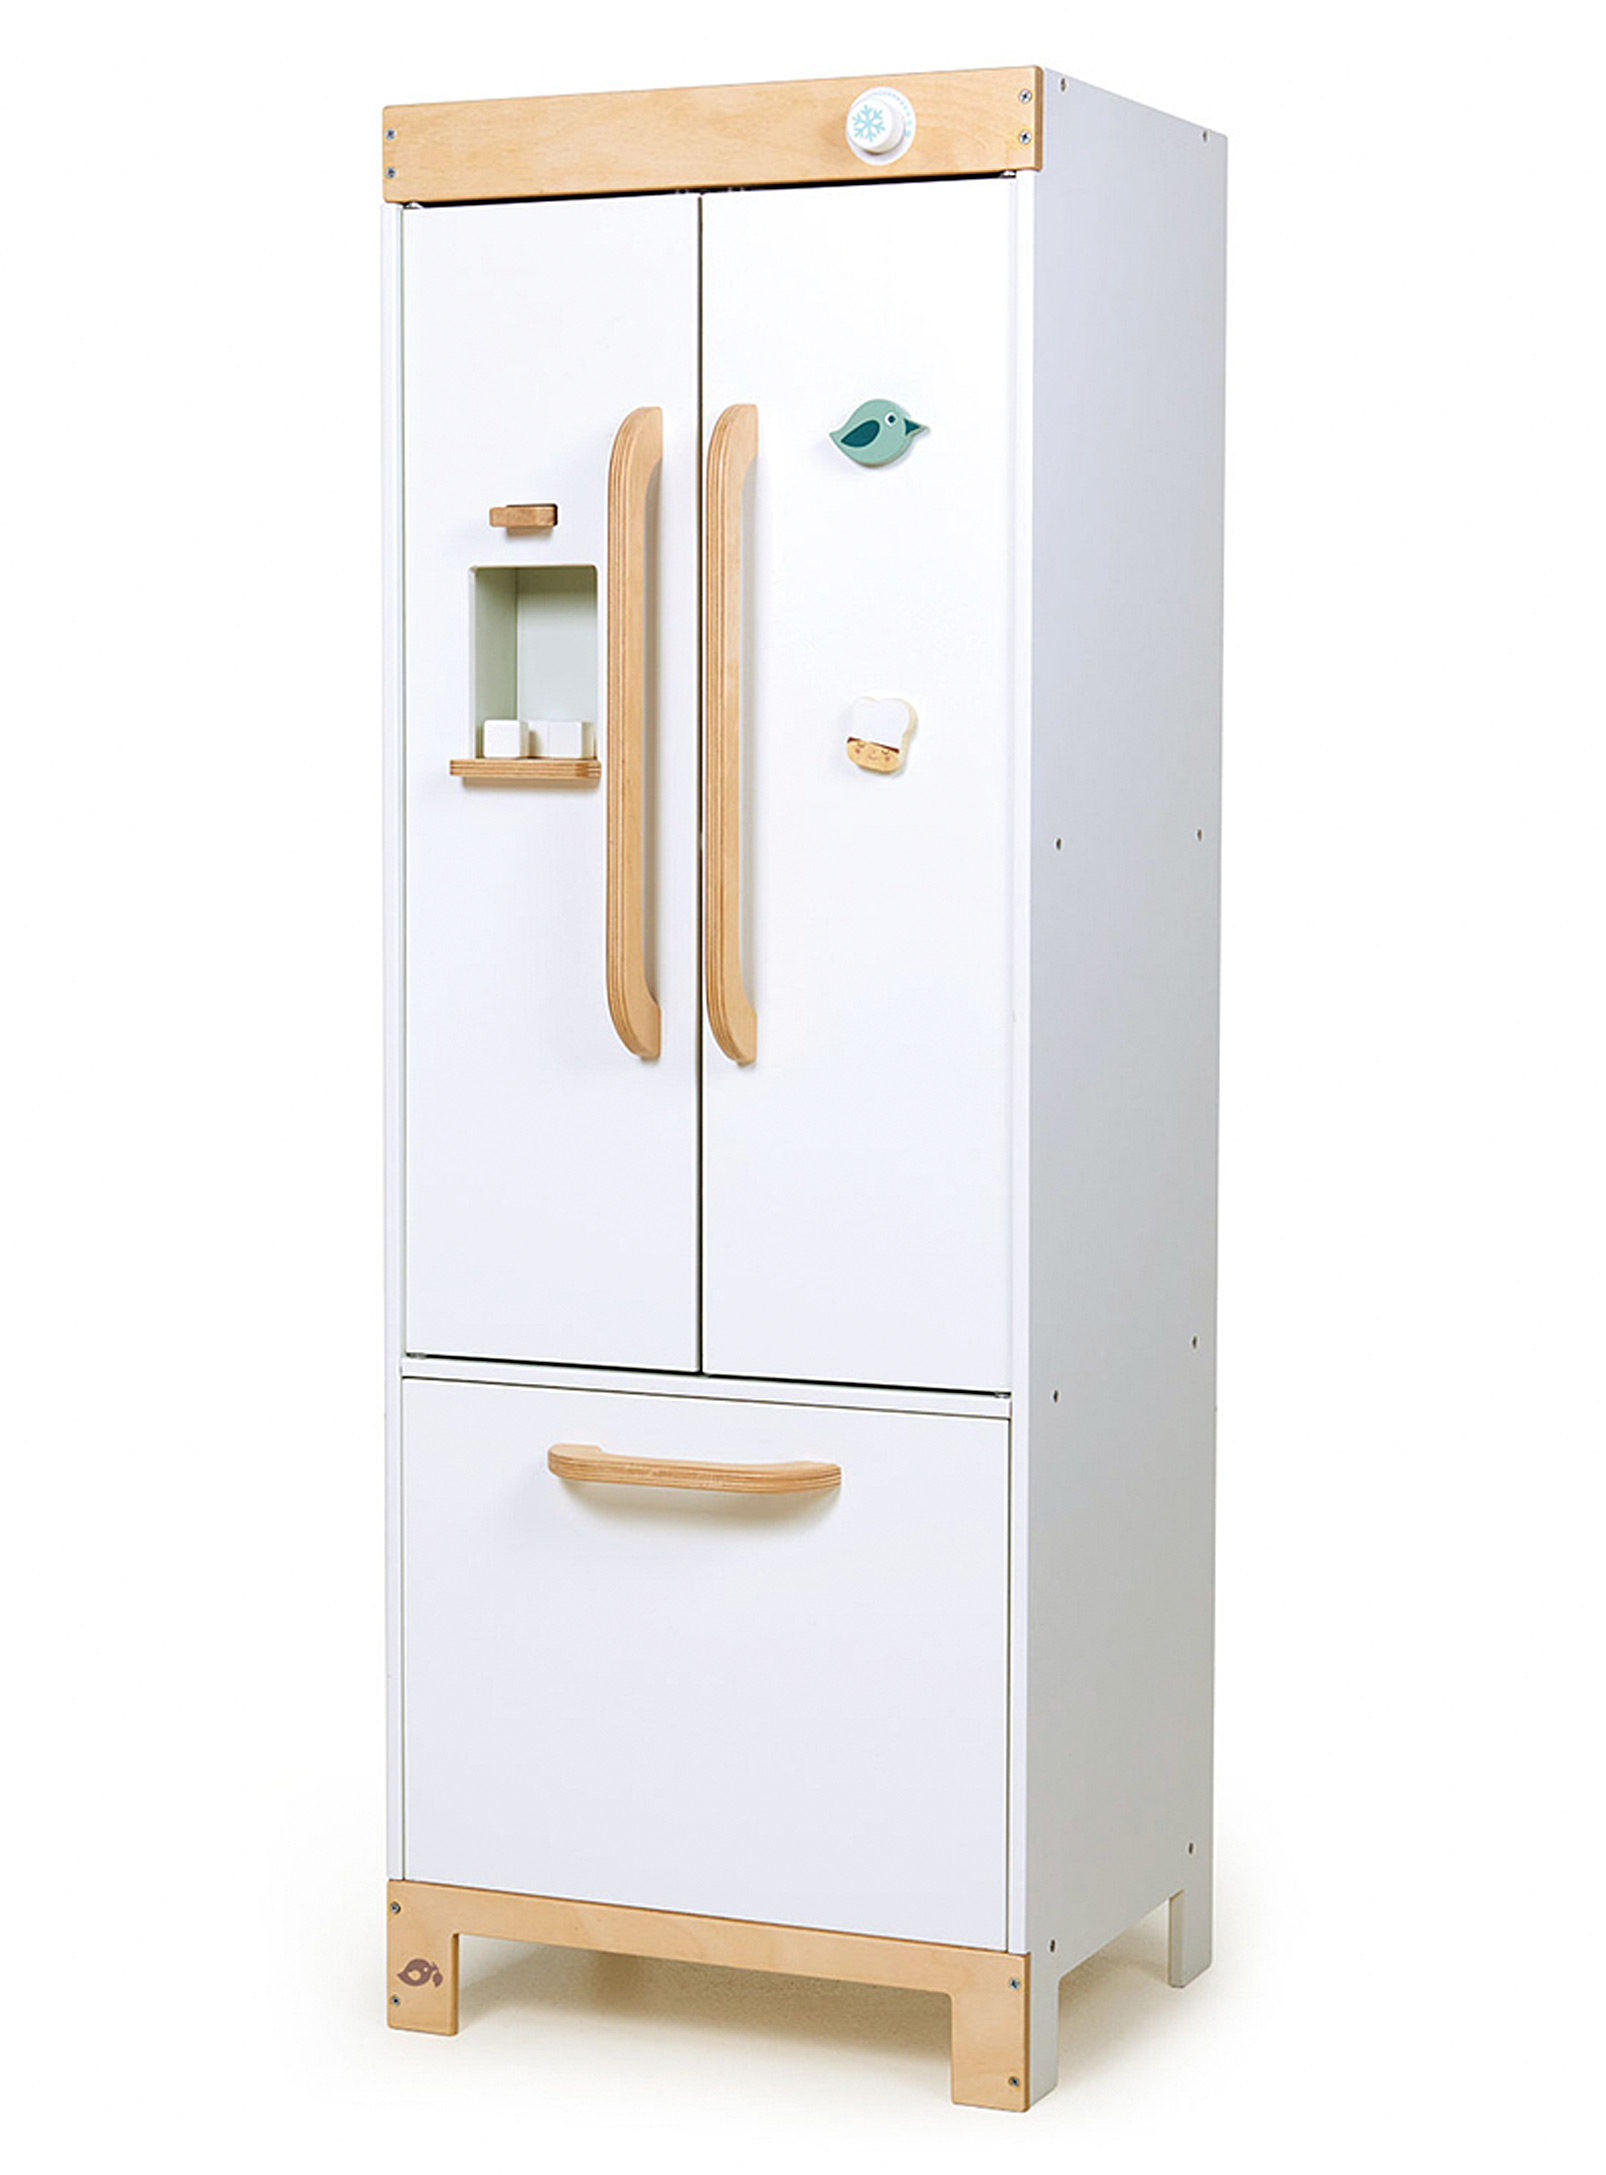 Tender Leaf Toys - Wooden refrigerator